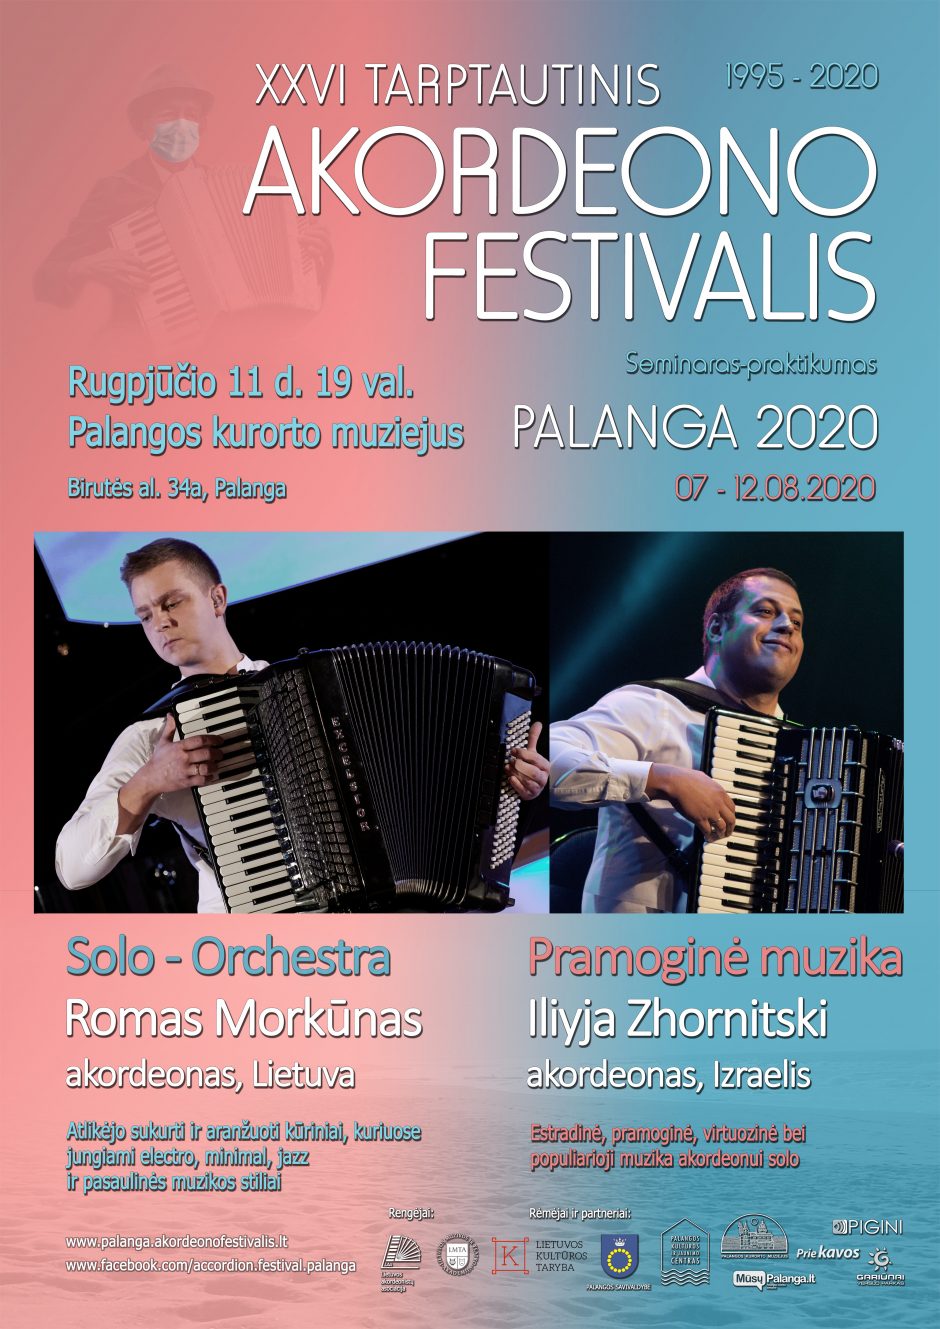 Rūgpjūtis Palangoje gausus renginių: pristatomas Tarptautinis akordeono festivalis